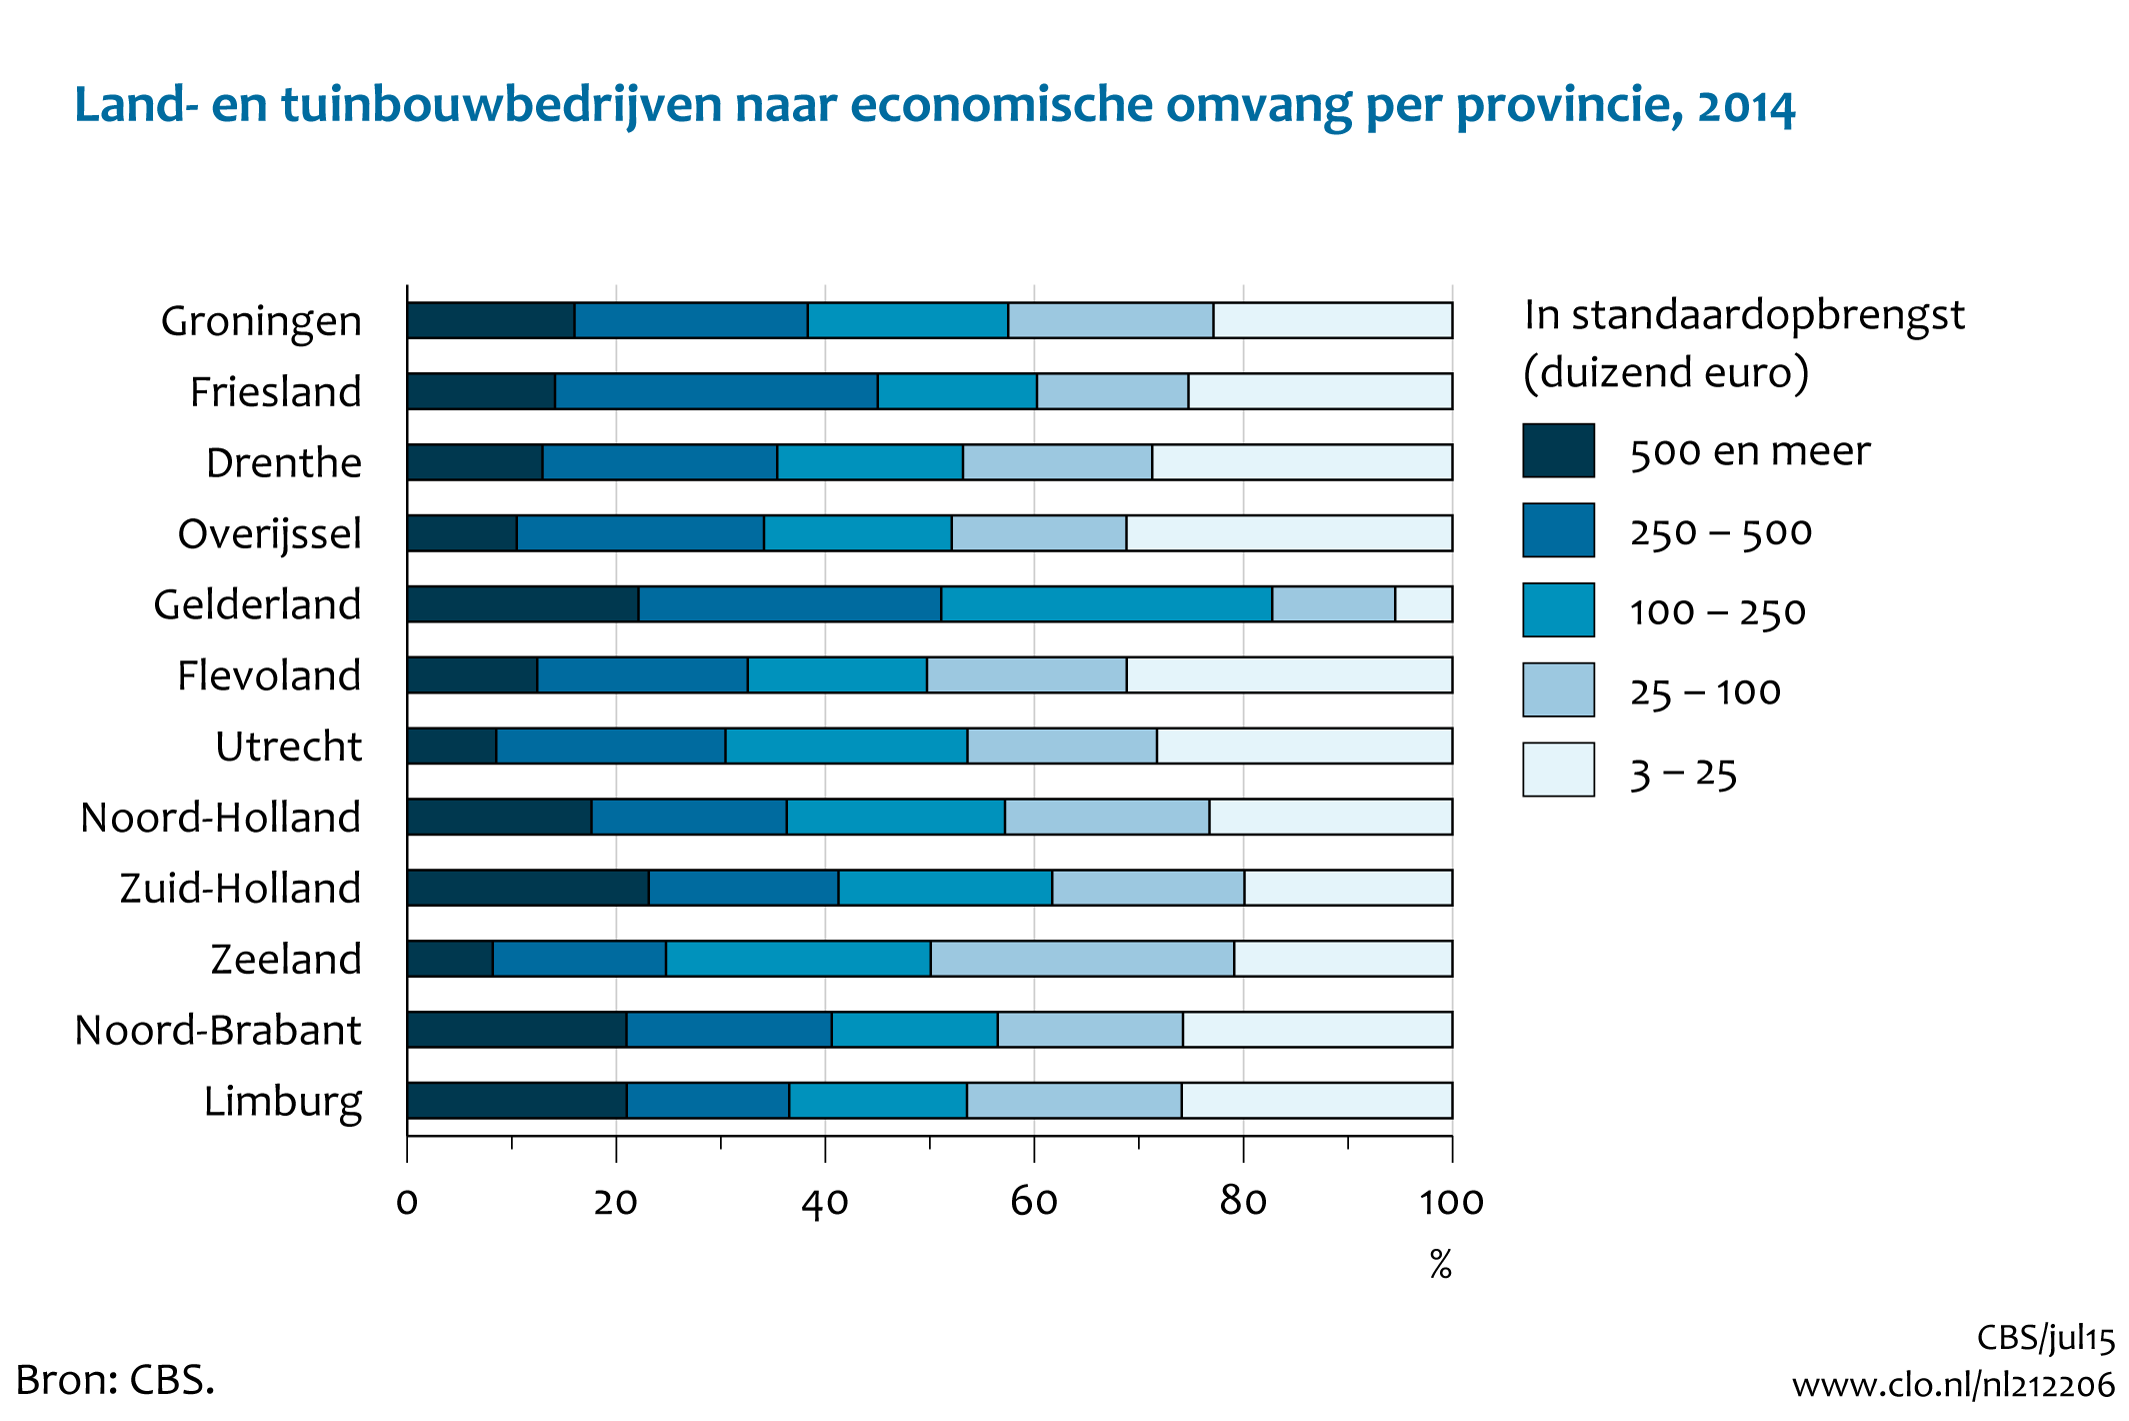 Figuur  Land- en tuinbouwbedrijven naar economische omvang per provincie, 2014. In de rest van de tekst wordt deze figuur uitgebreider uitgelegd.